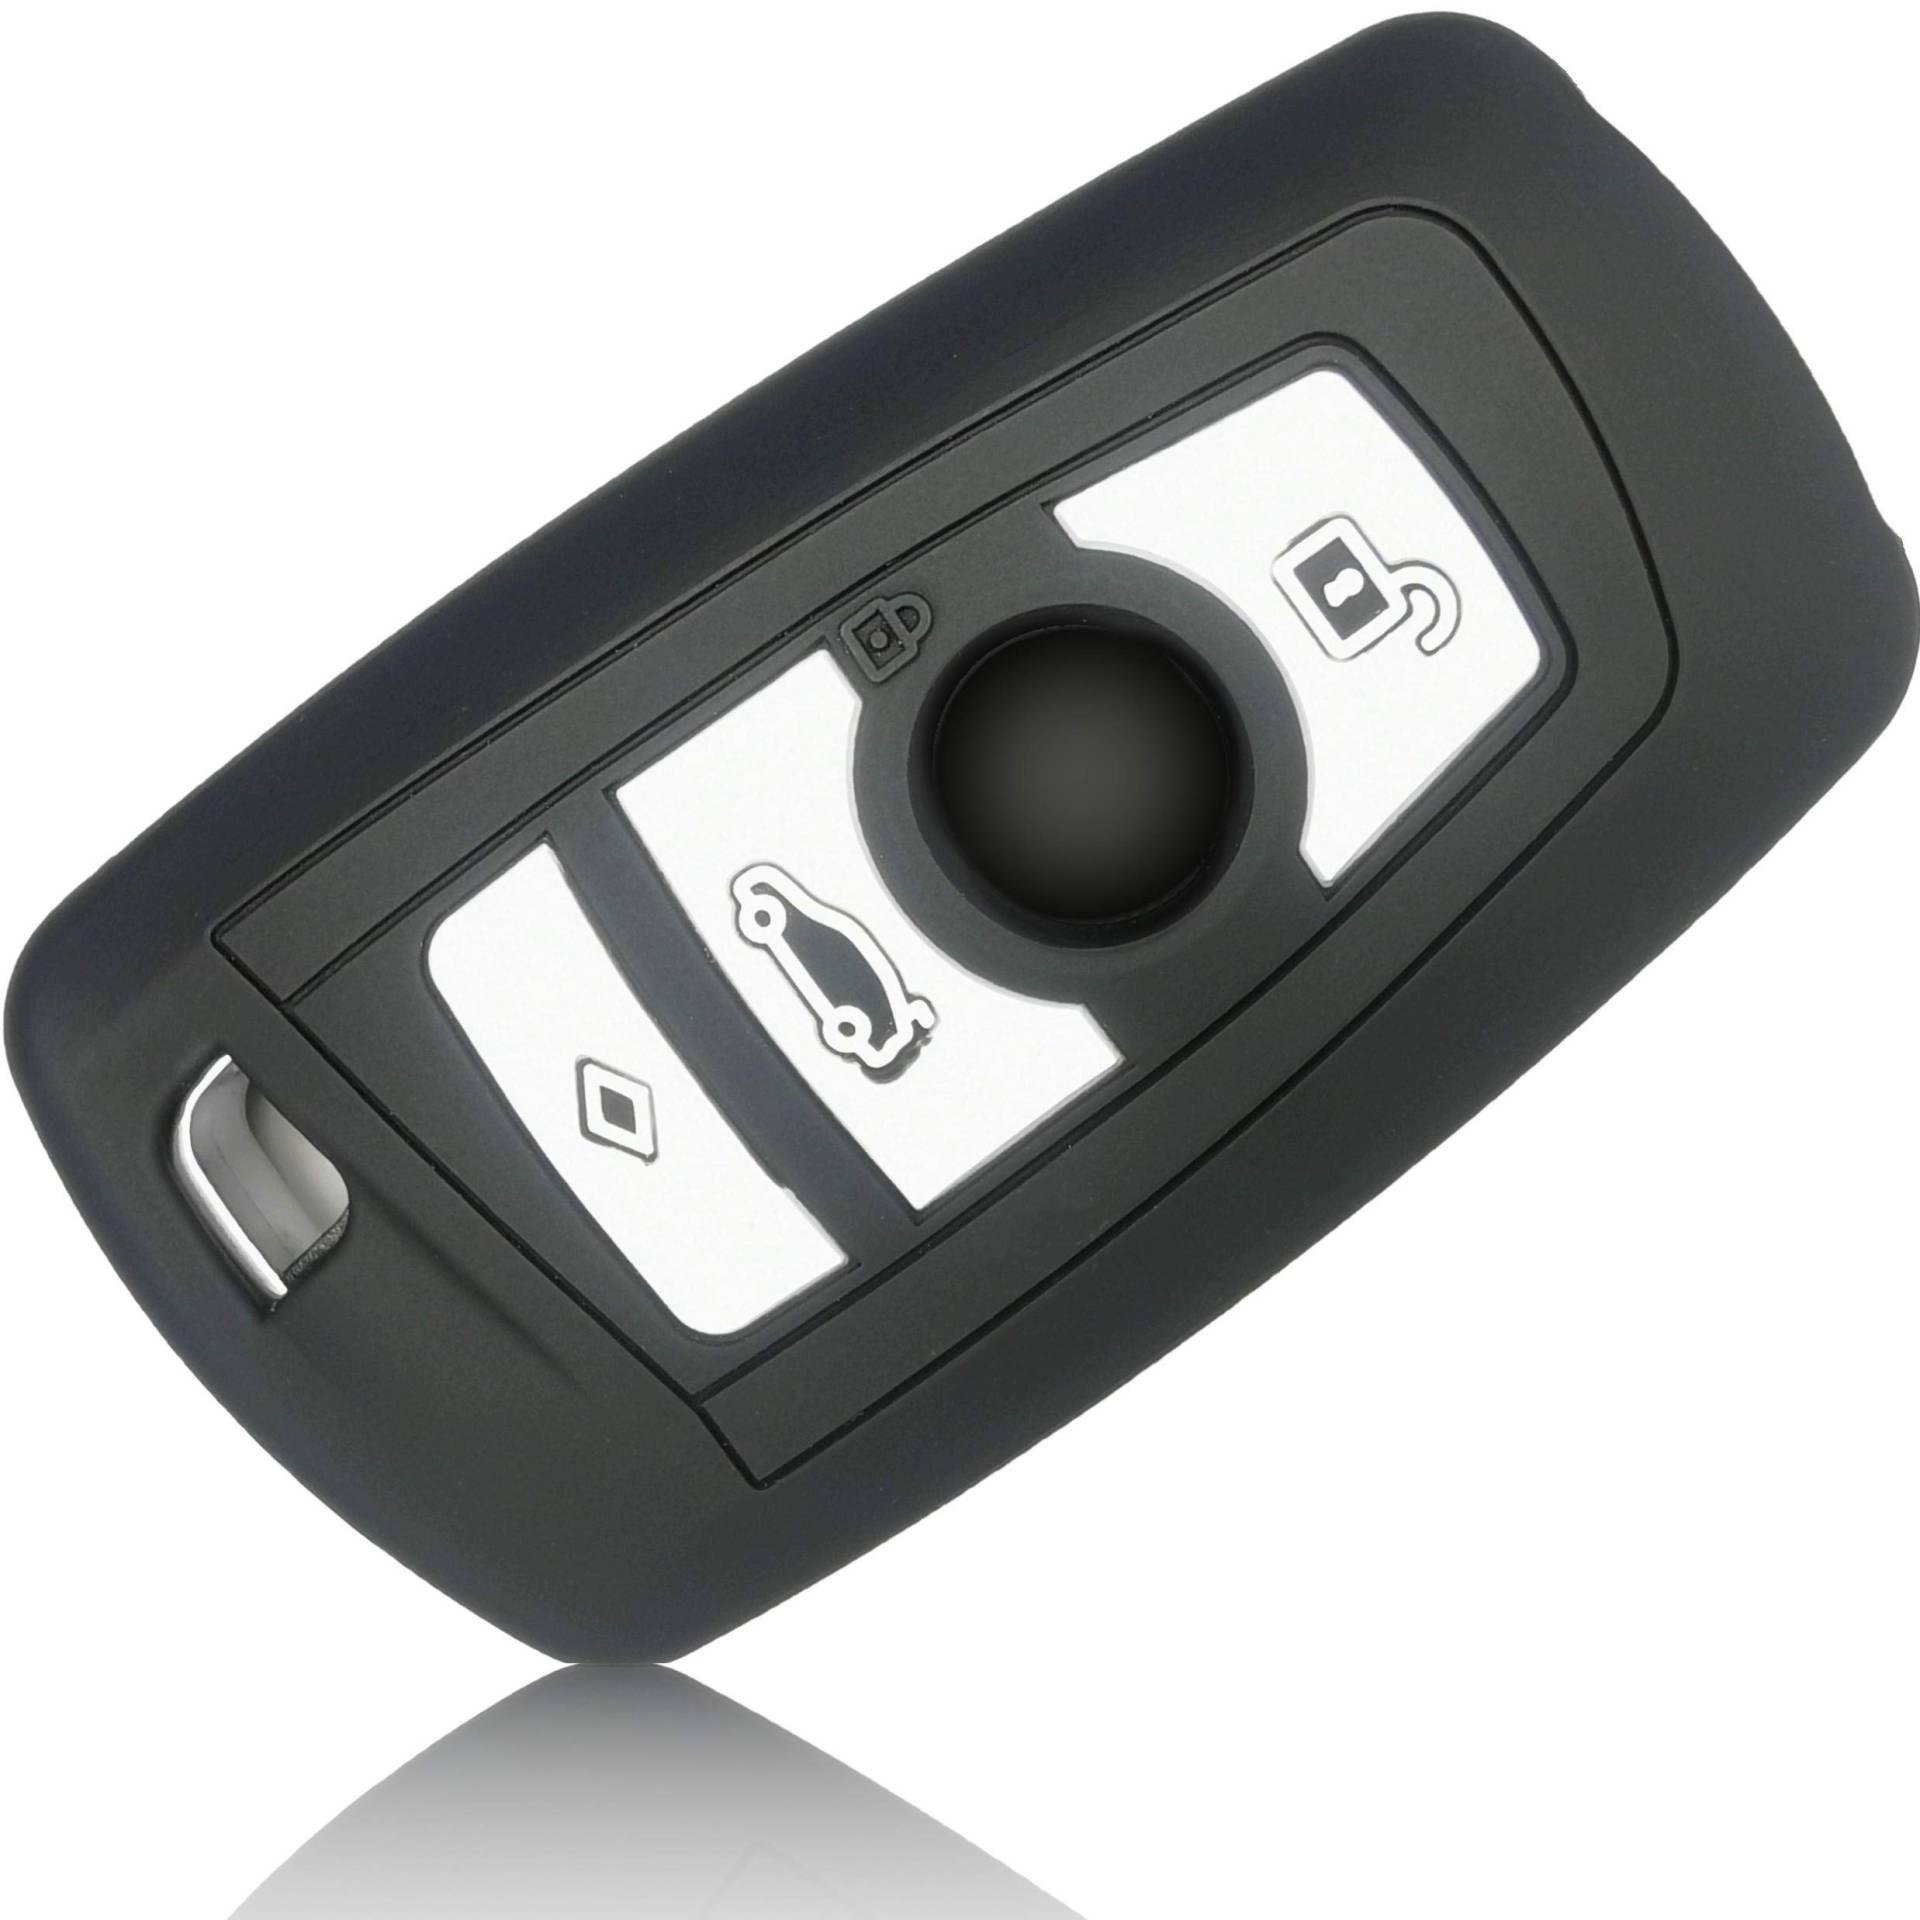 FOAMO Autoschlüssel Hülle kompatibel mit BMW 3-4-Tasten (nur Keyless-Go) - Silikon Schutzhülle Cover Schlüssel-Hülle in Schwarz Weiß von FOAMO